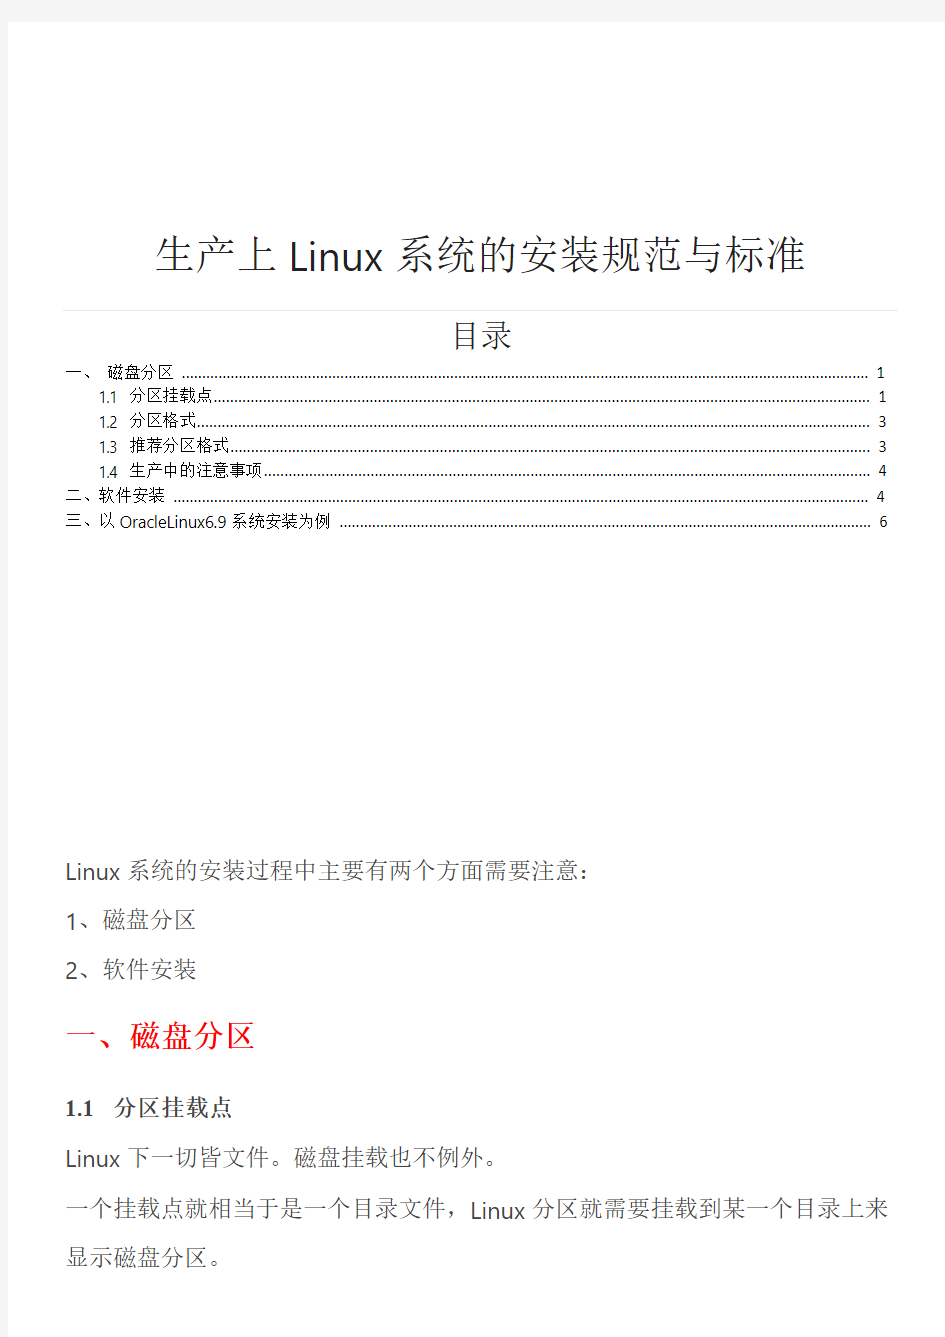 生产上Linux系统的安装规范与标准